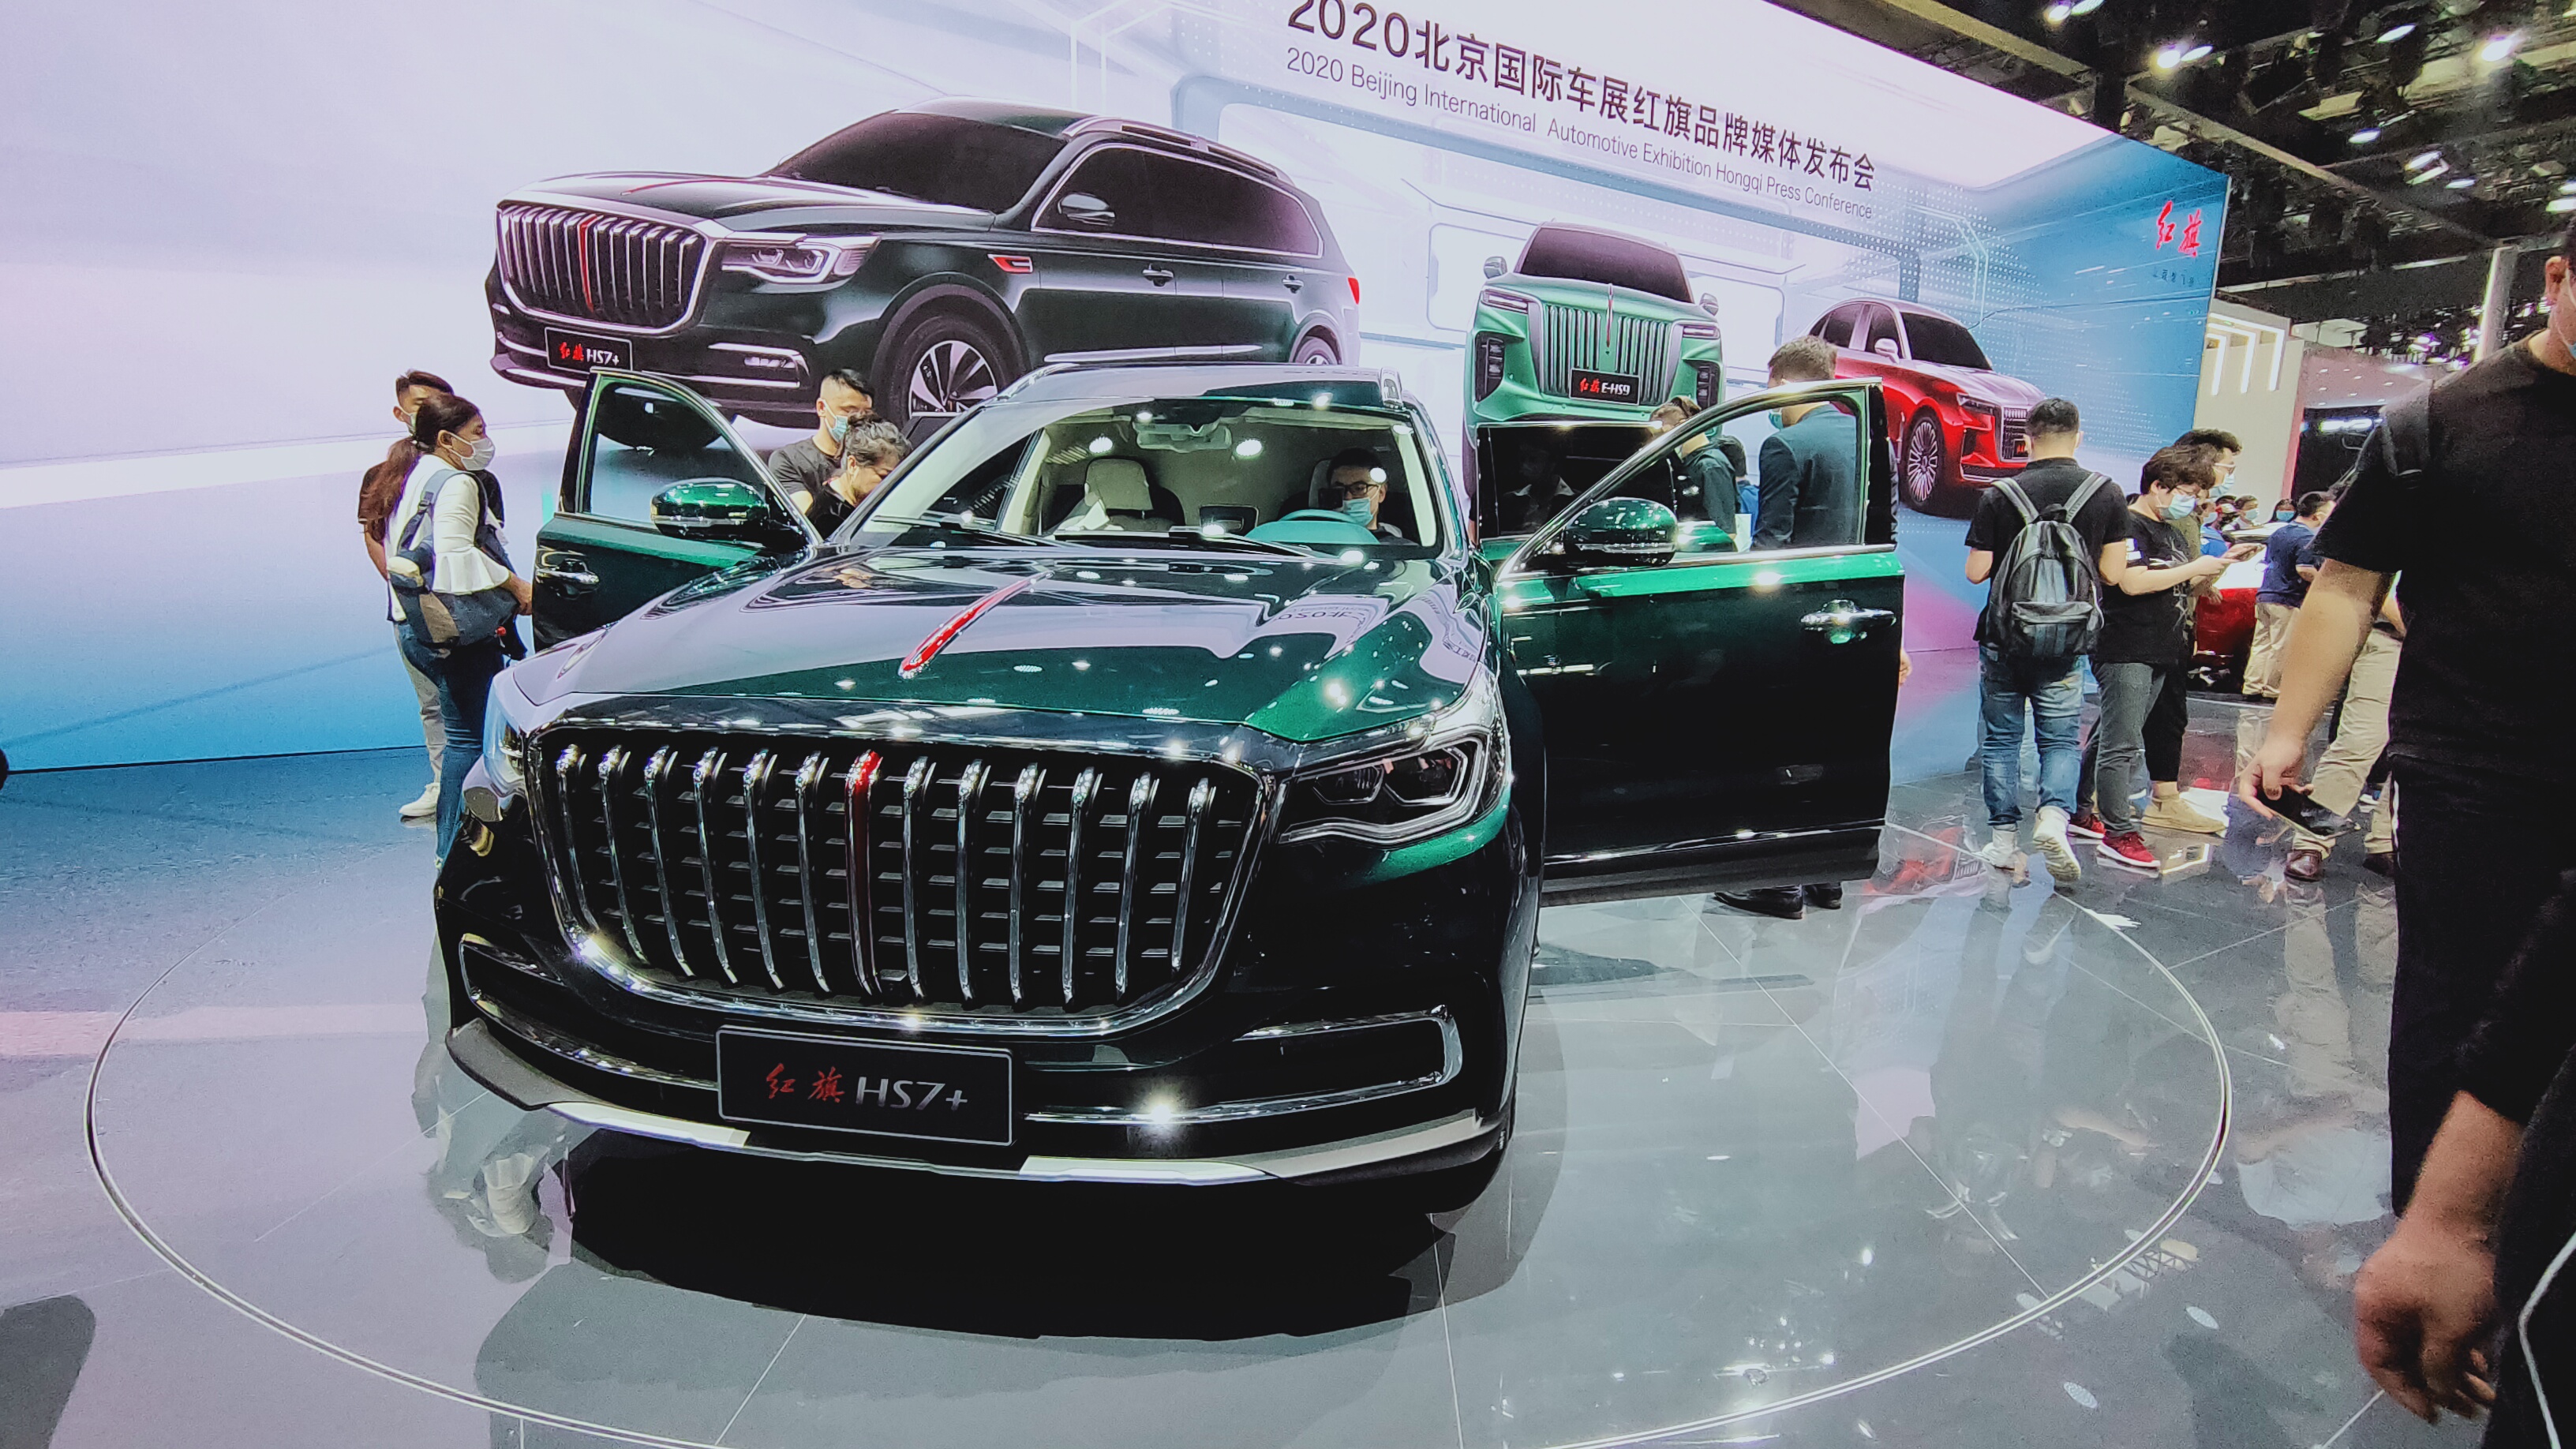 2020北京车展广汽三菱展台星光熠熠 欧蓝德成为全场焦点-新浪汽车